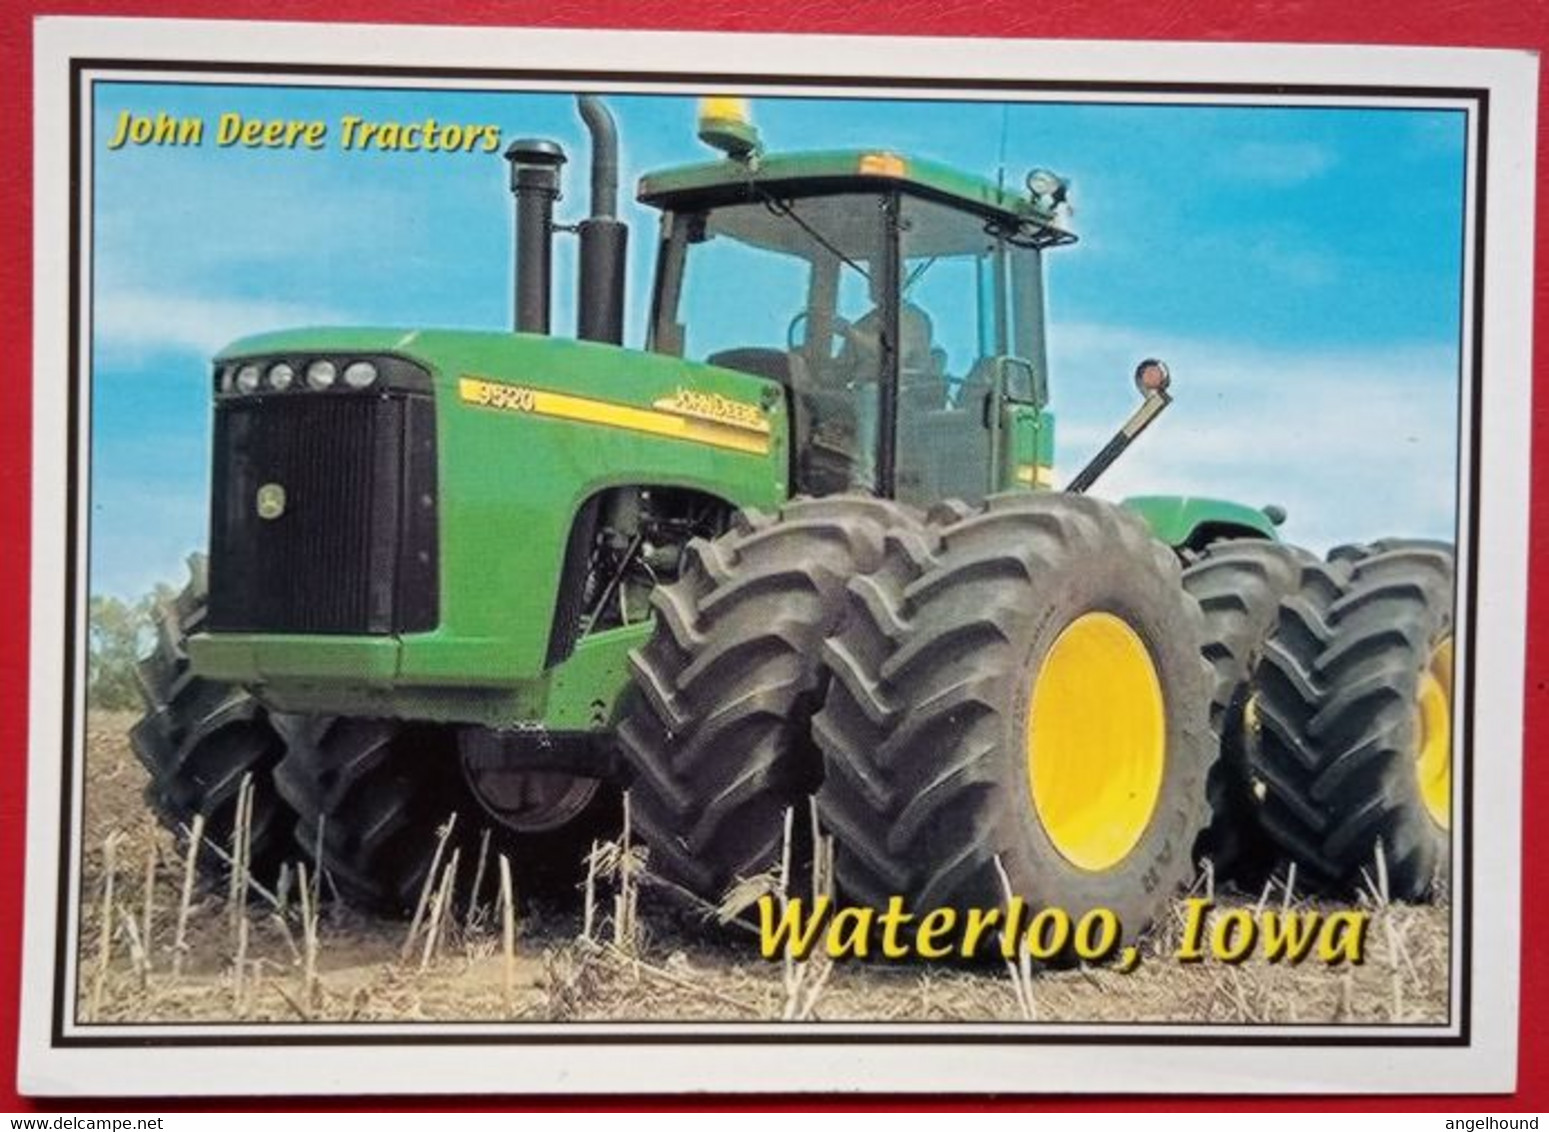 John Deere Tractors - Waterloo